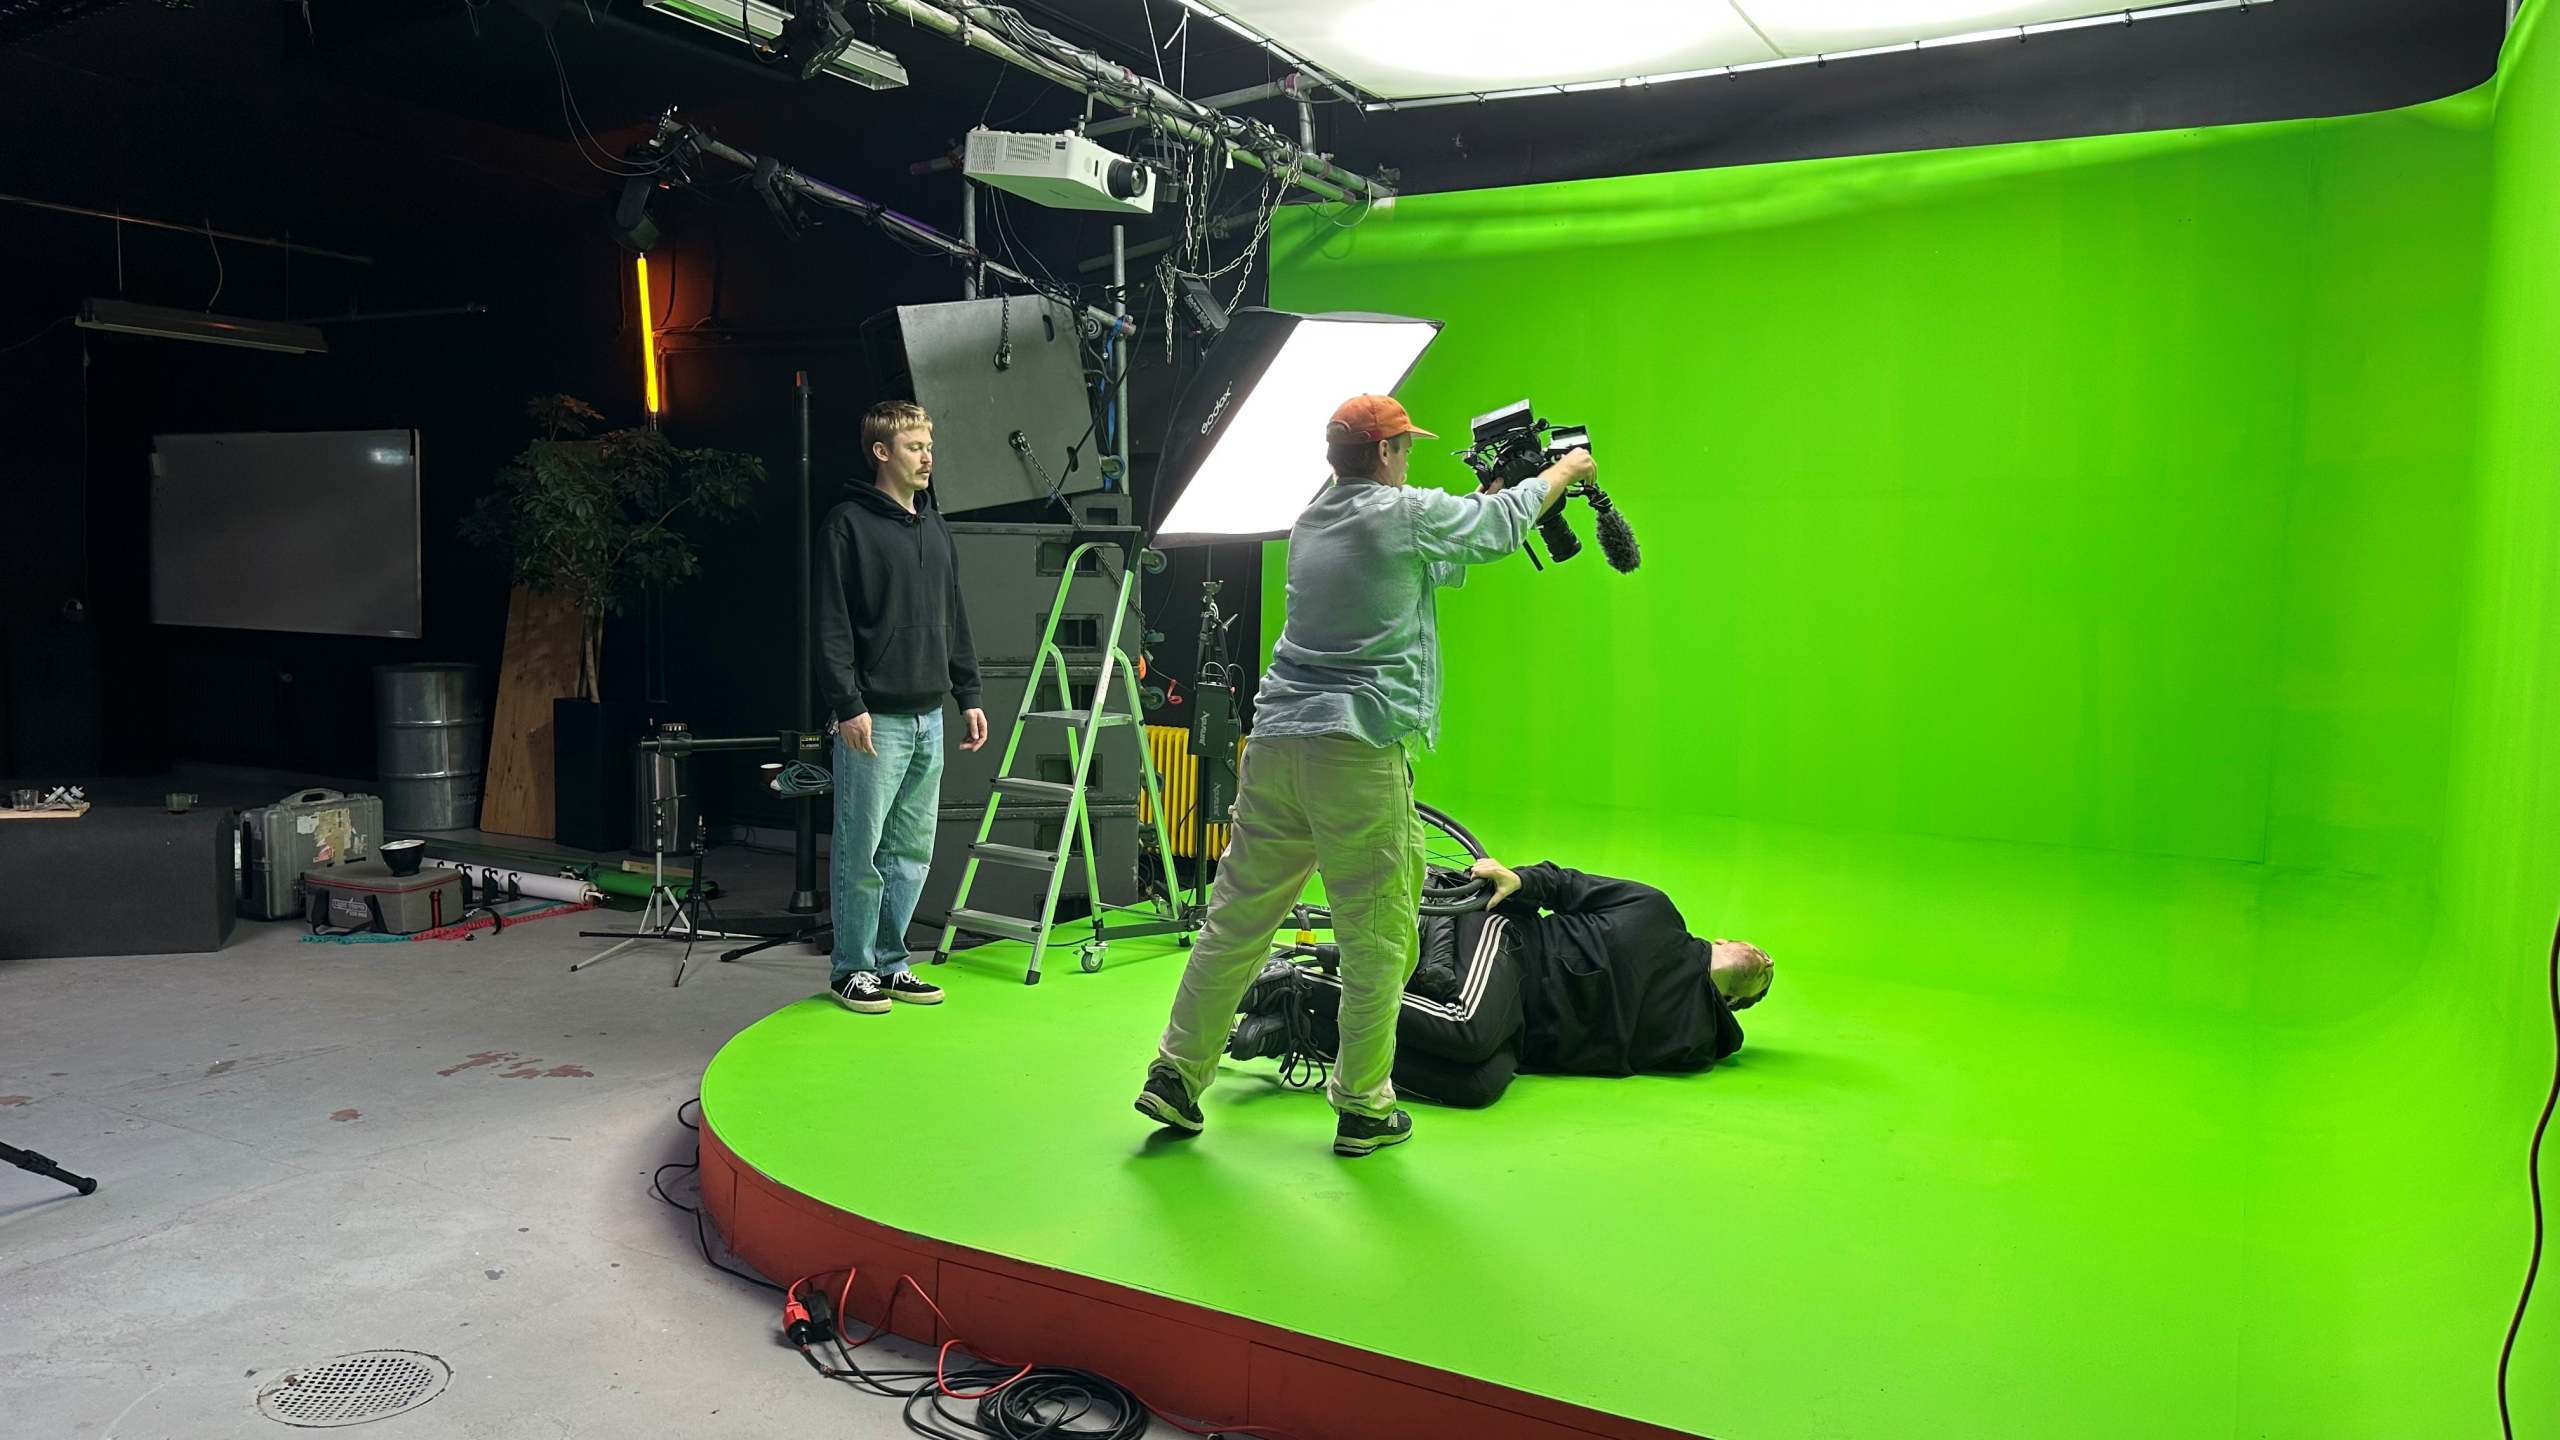 Behind the scenes-bild från filminspelning. Greenscreen, videografer och kameror, en person ligger på golvet i rullstol.